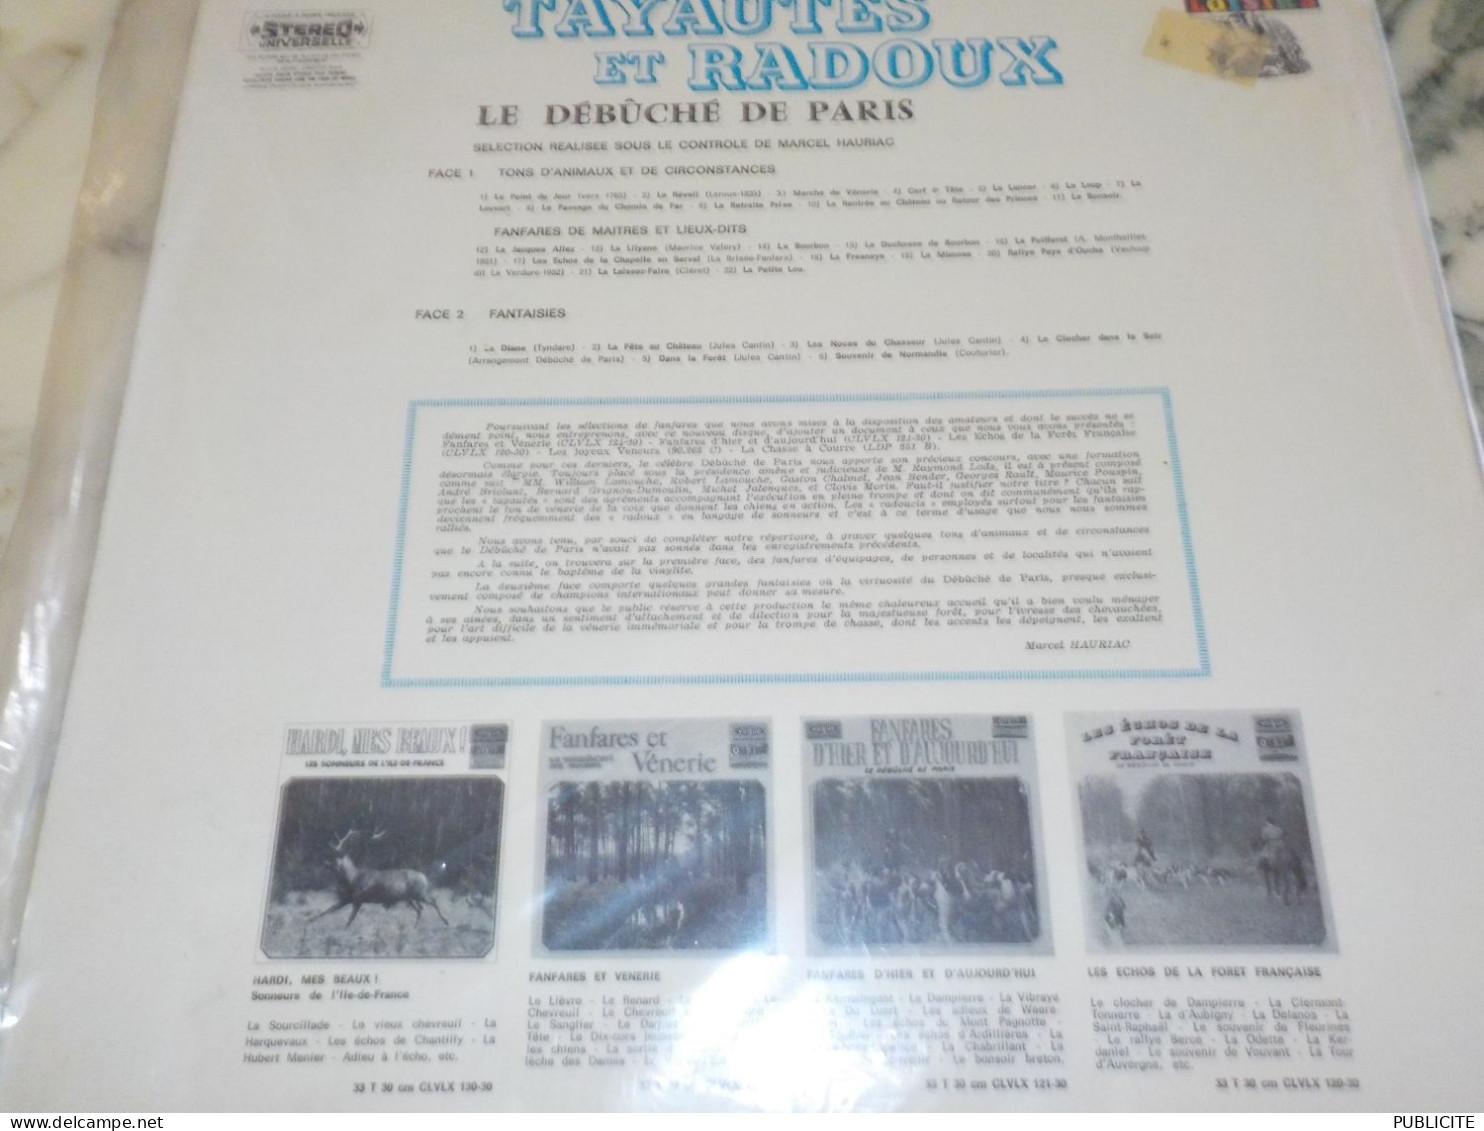 DISQUE 33 TOURS  TAYAUTES ET RADOUX LE DEBUCHE DE PARIS 1967 - Instrumental